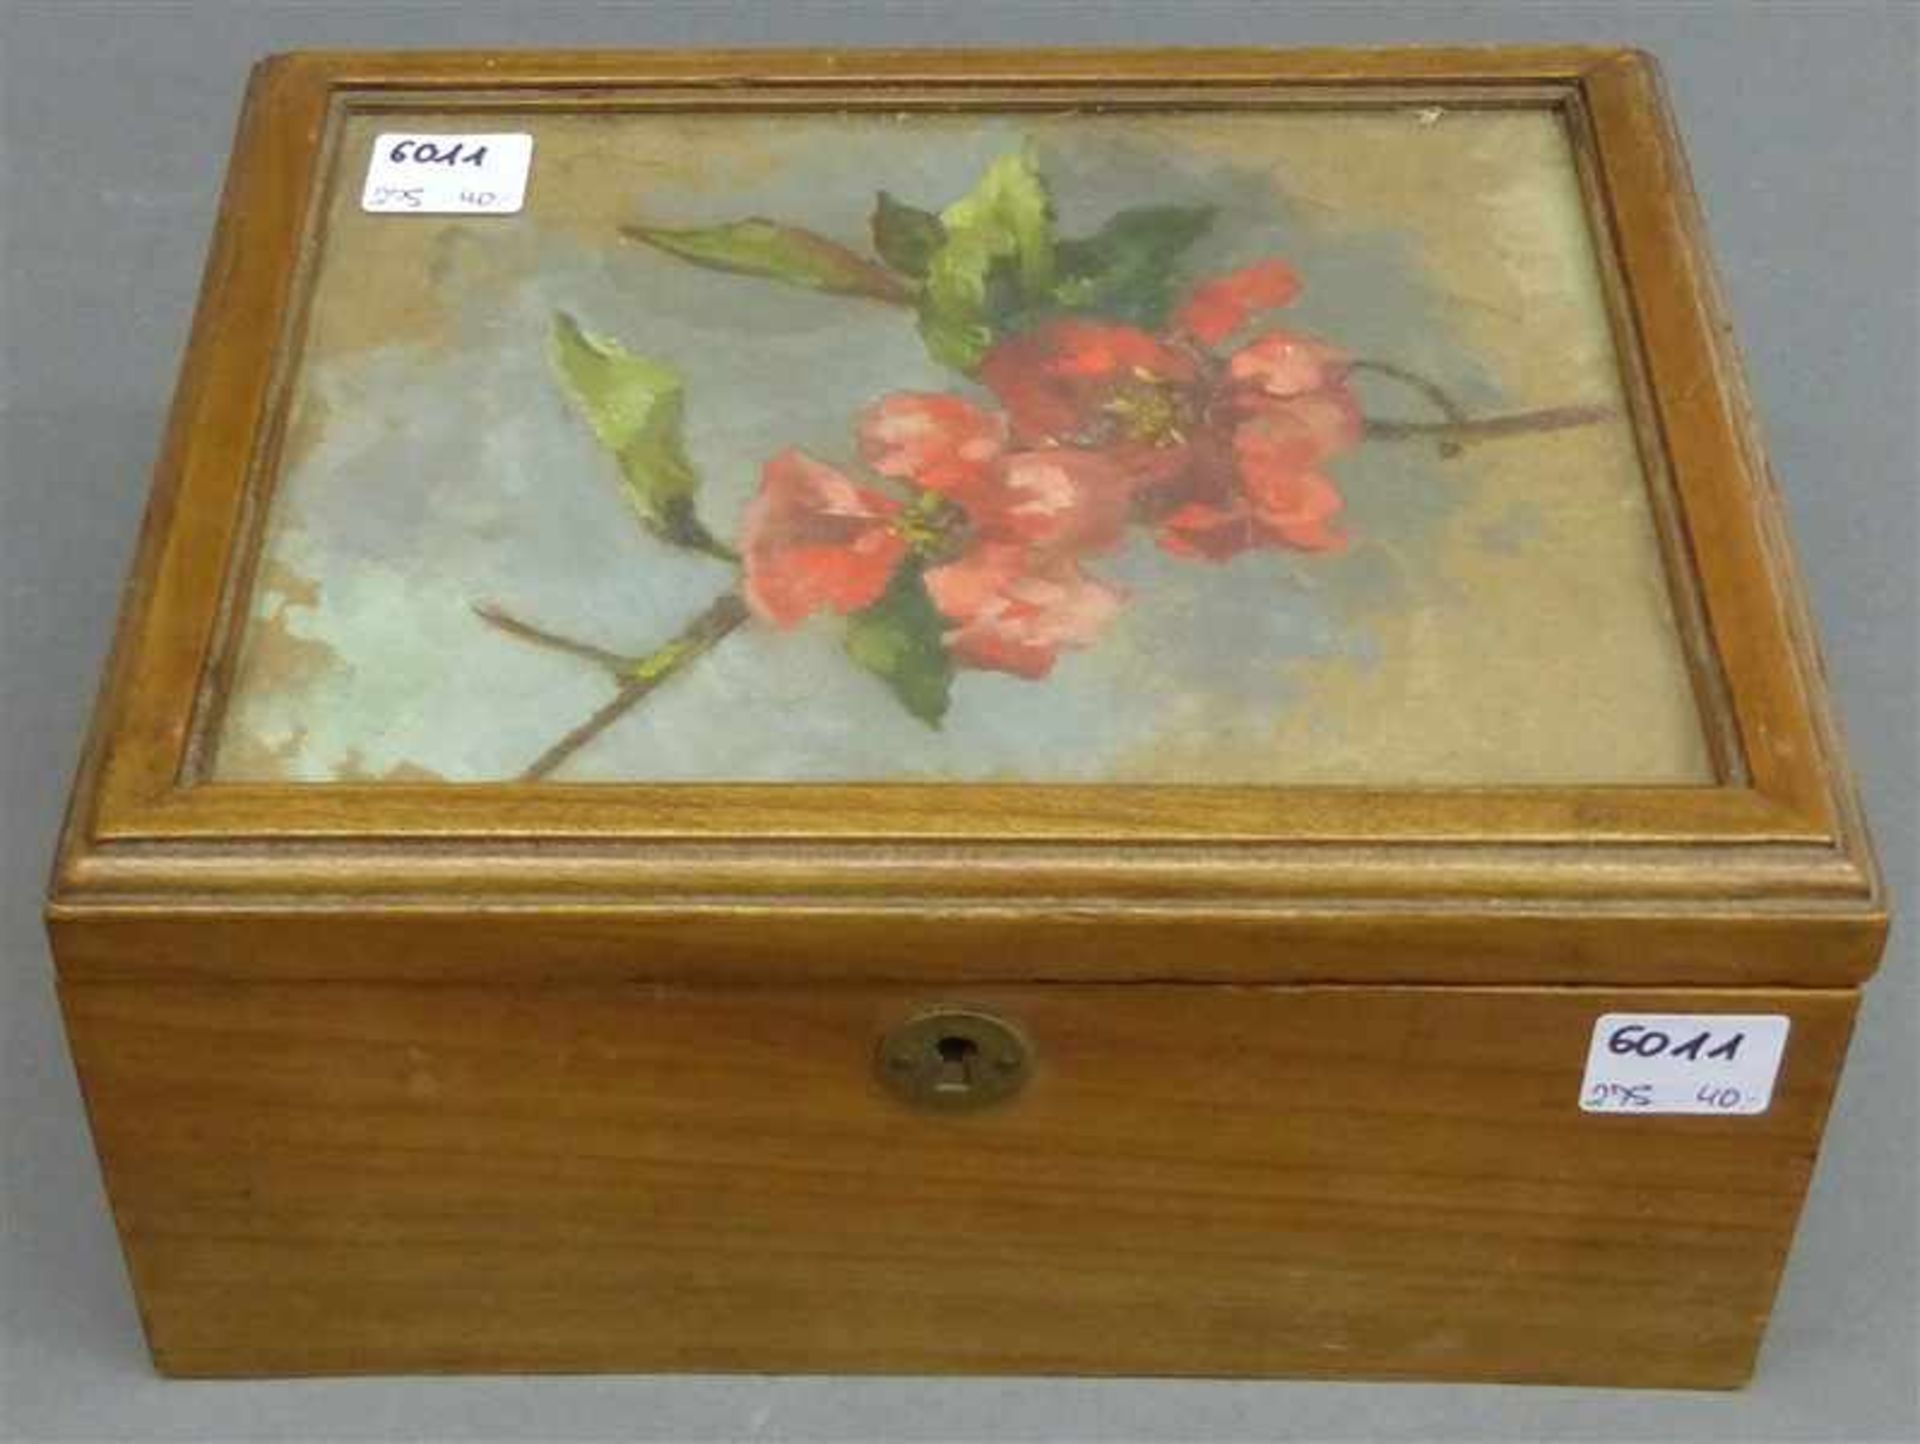 Holzkästchen Deckel mit floraler Bemalung, h 11 cm, b 21 cm, t 18 cm,